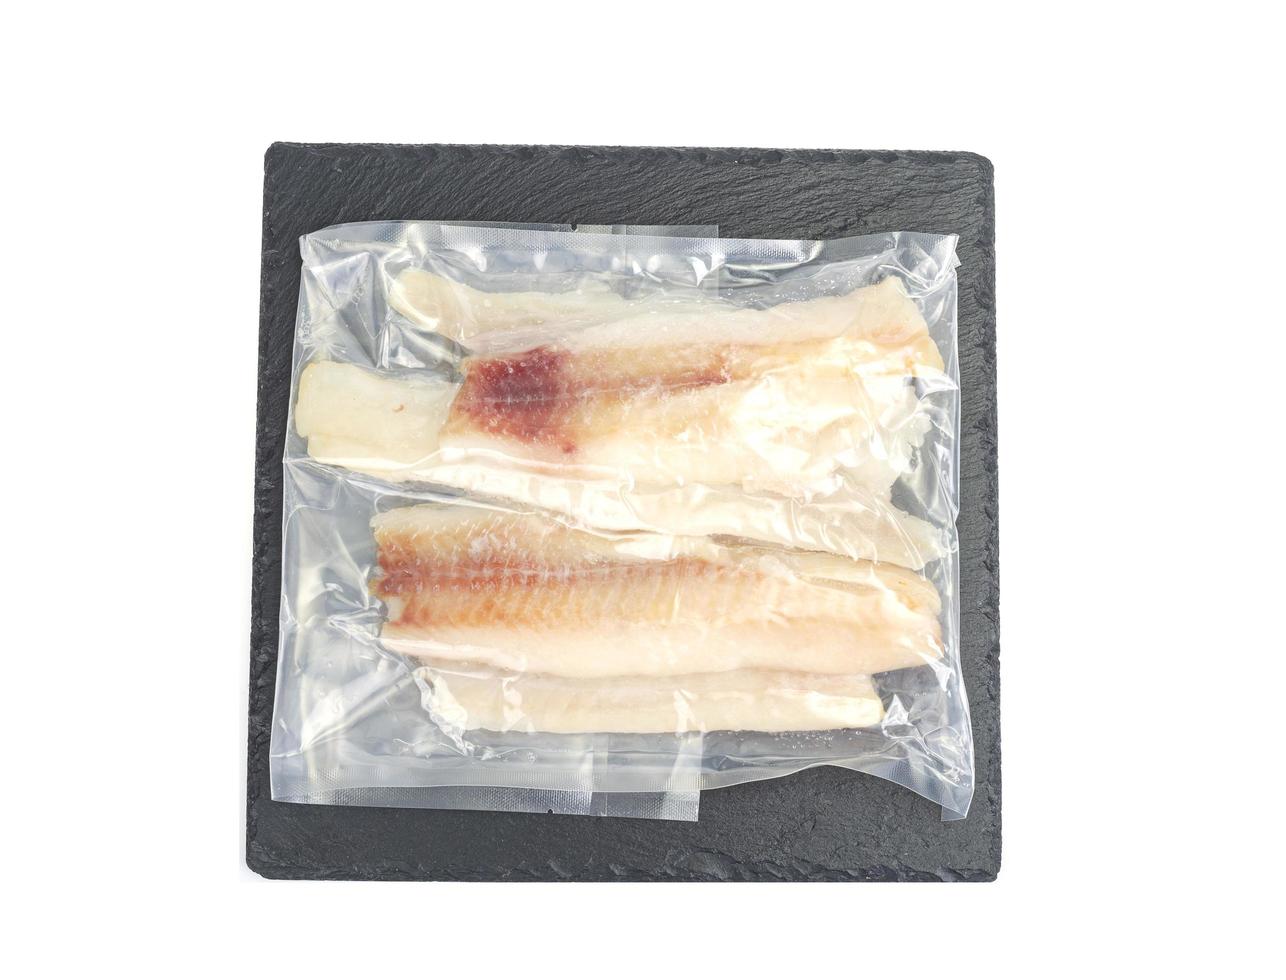 conditionnement de filets congelés de poisson blanc, goberge photo